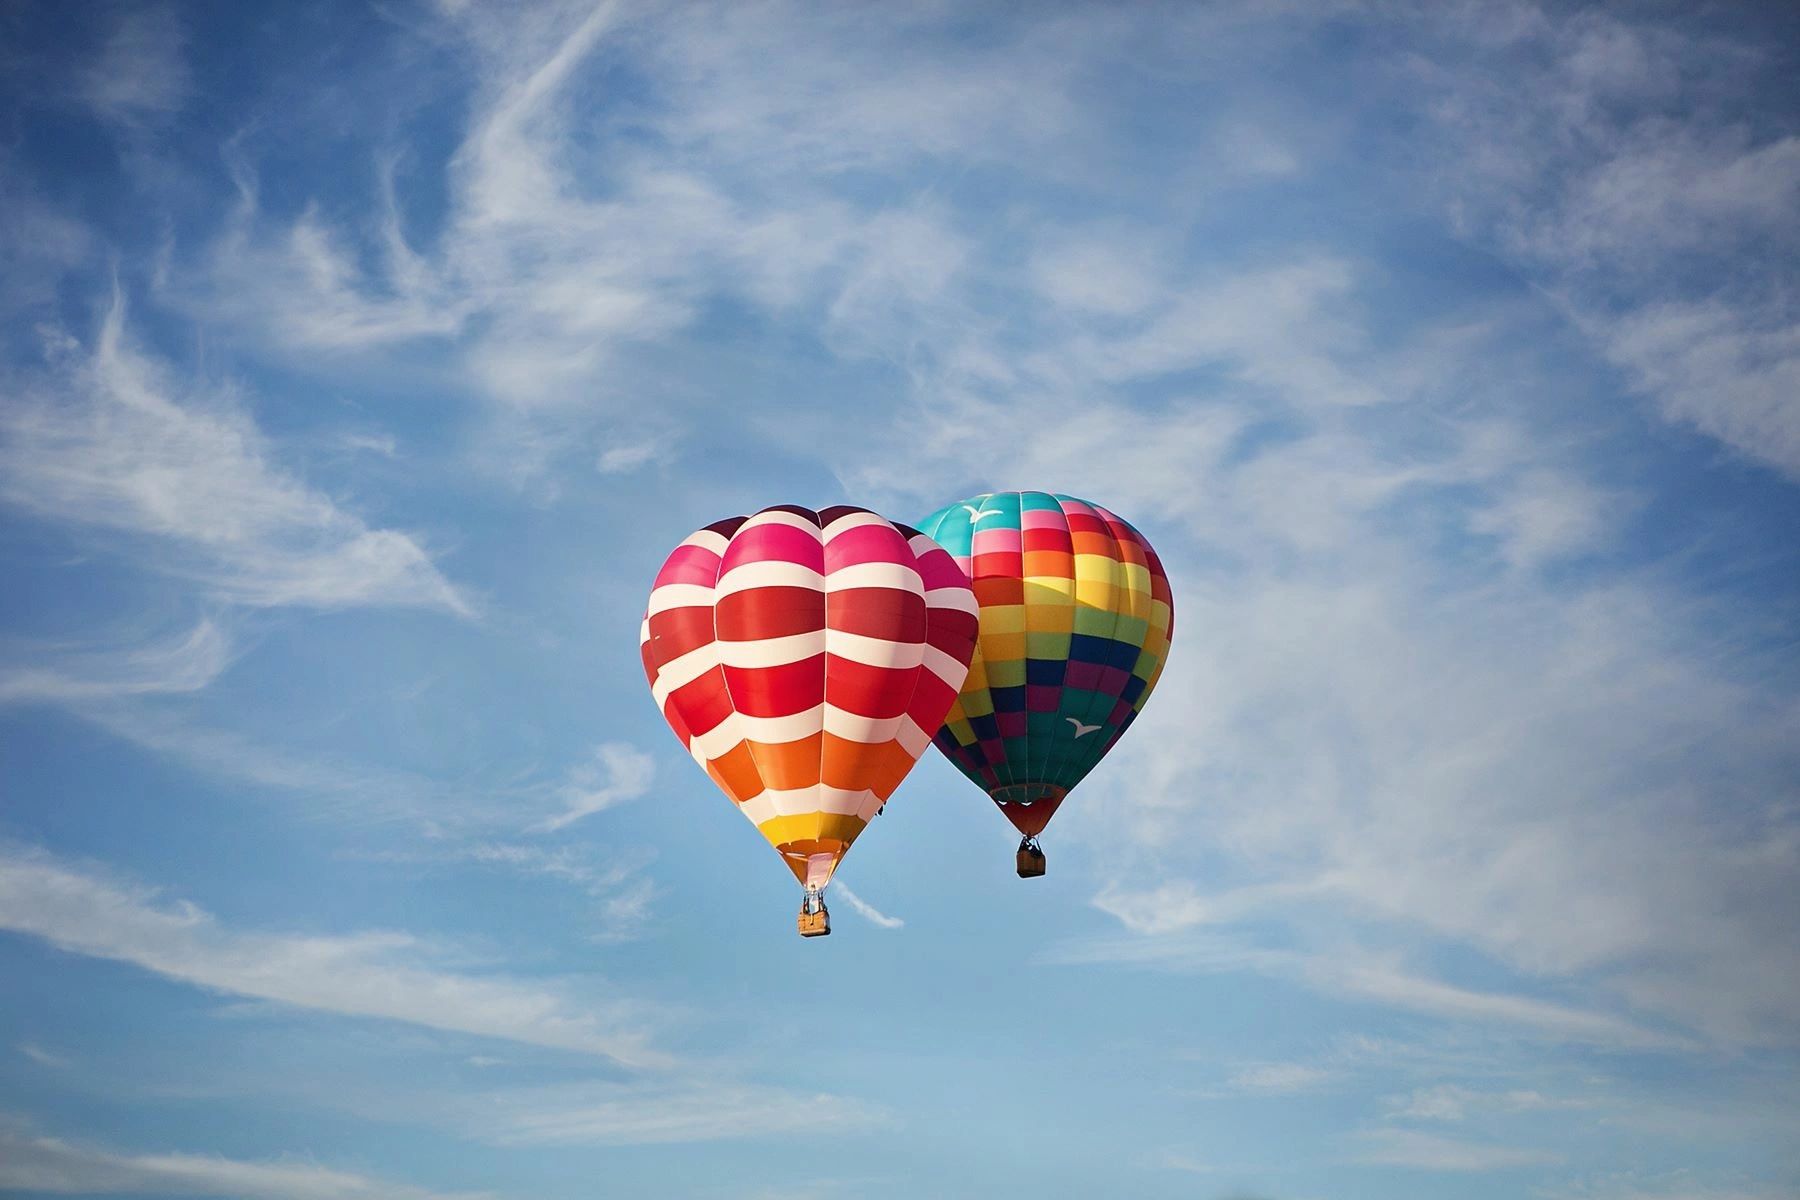 balloon chase adventures tours